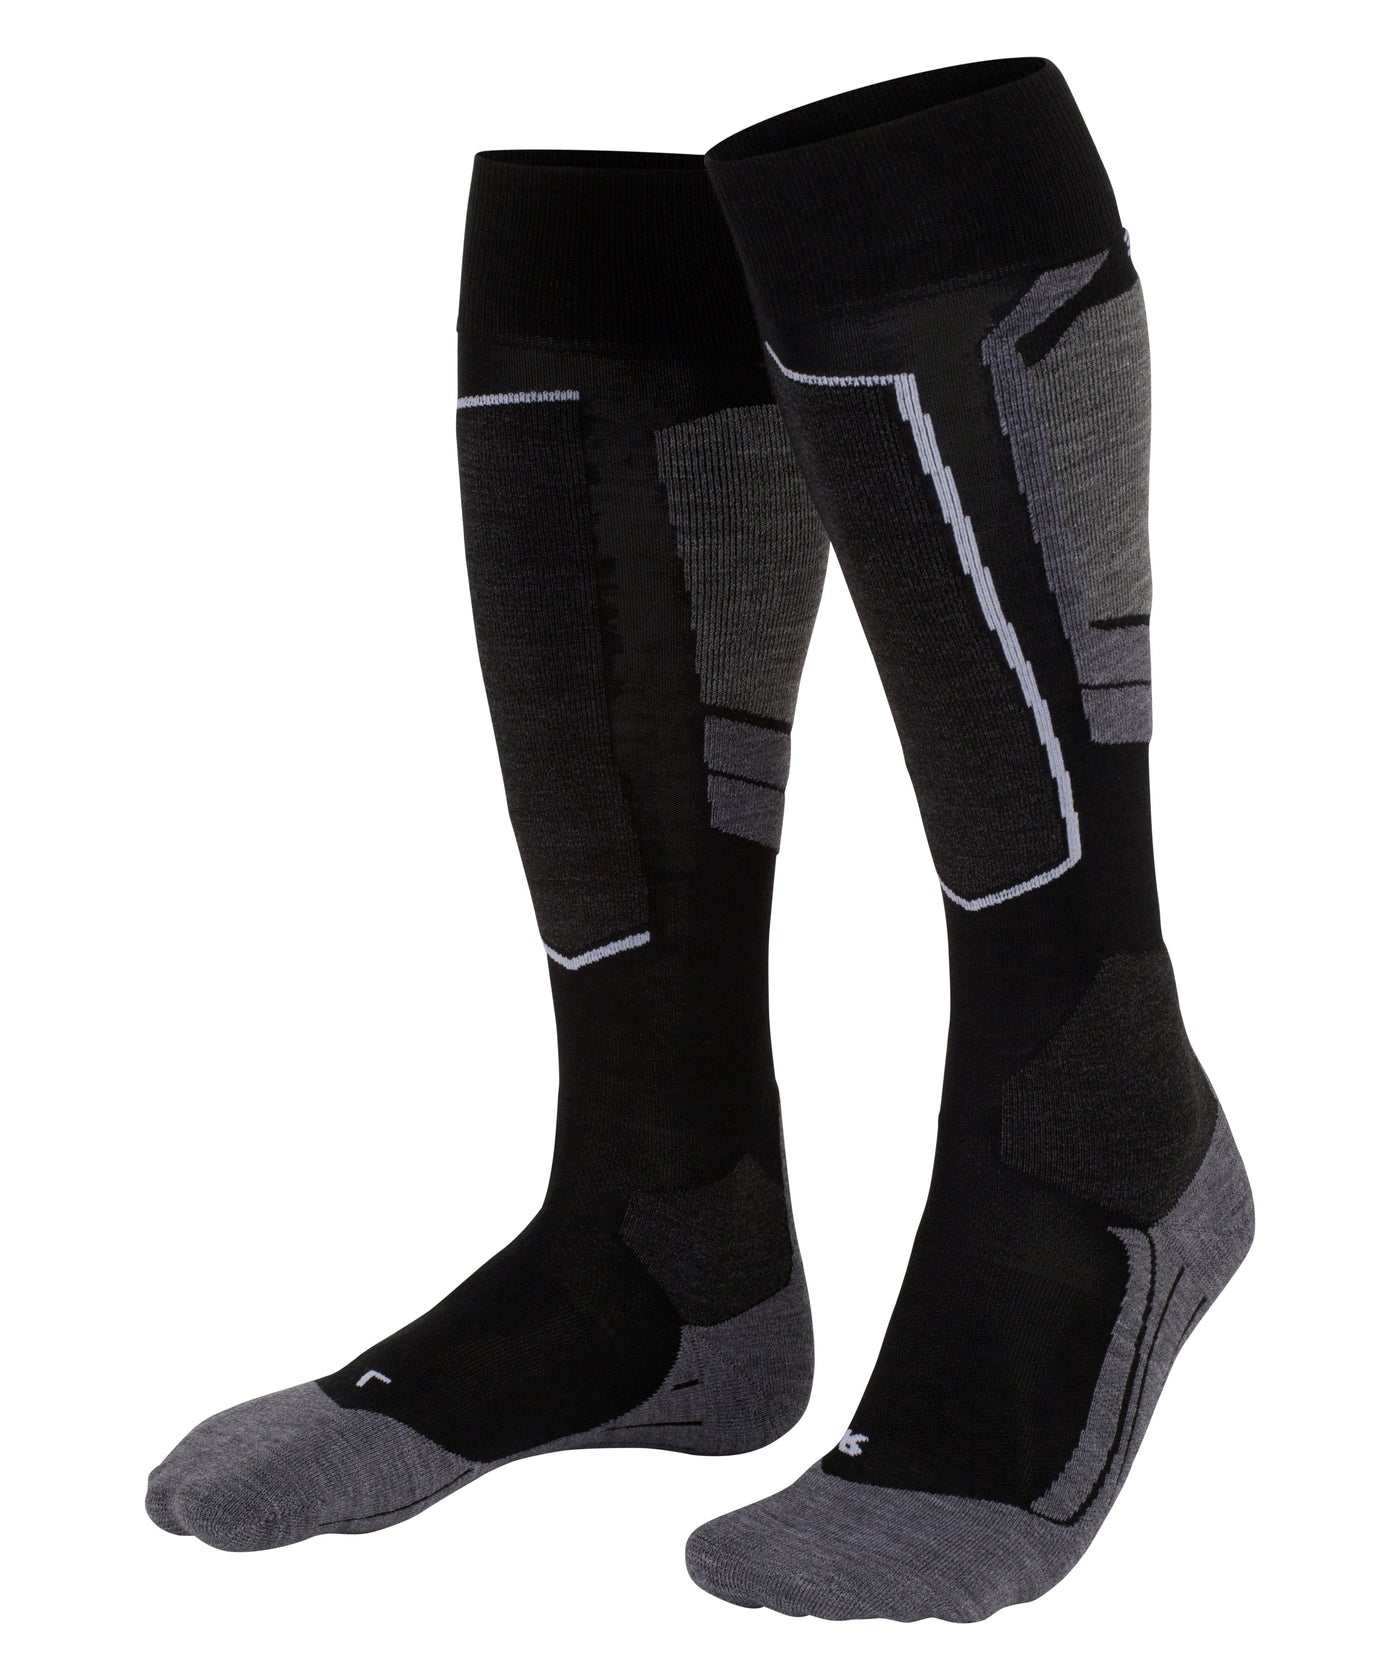 Falke SK4 Ladies Ski Socks in Black Mix